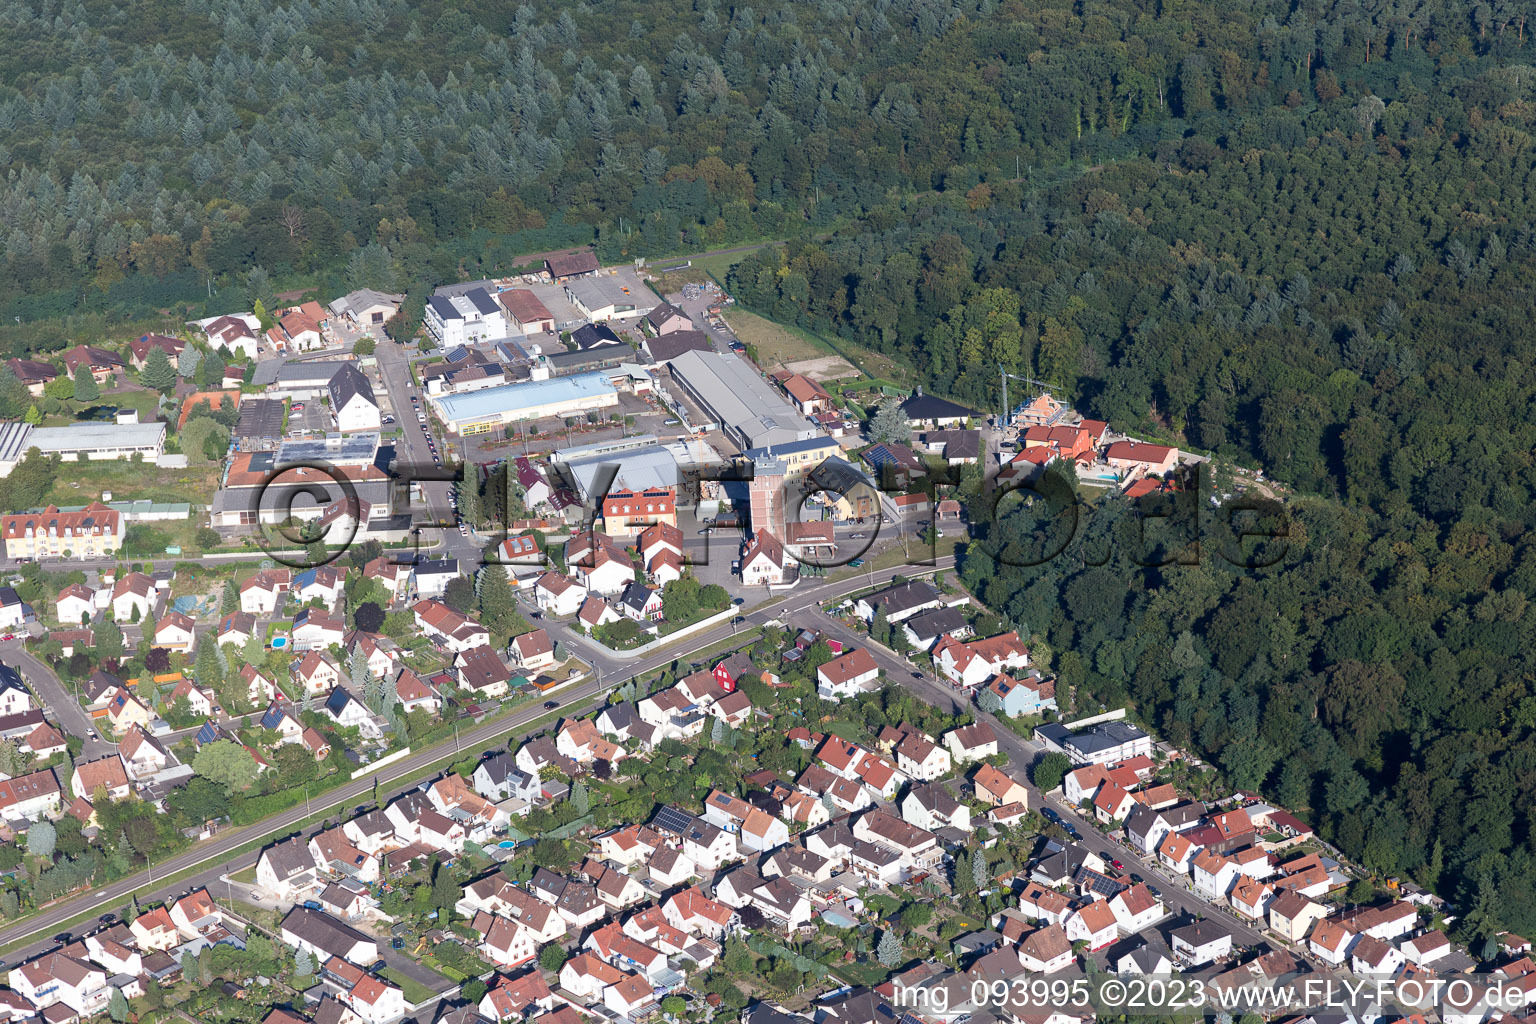 Jockgrim dans le département Rhénanie-Palatinat, Allemagne hors des airs